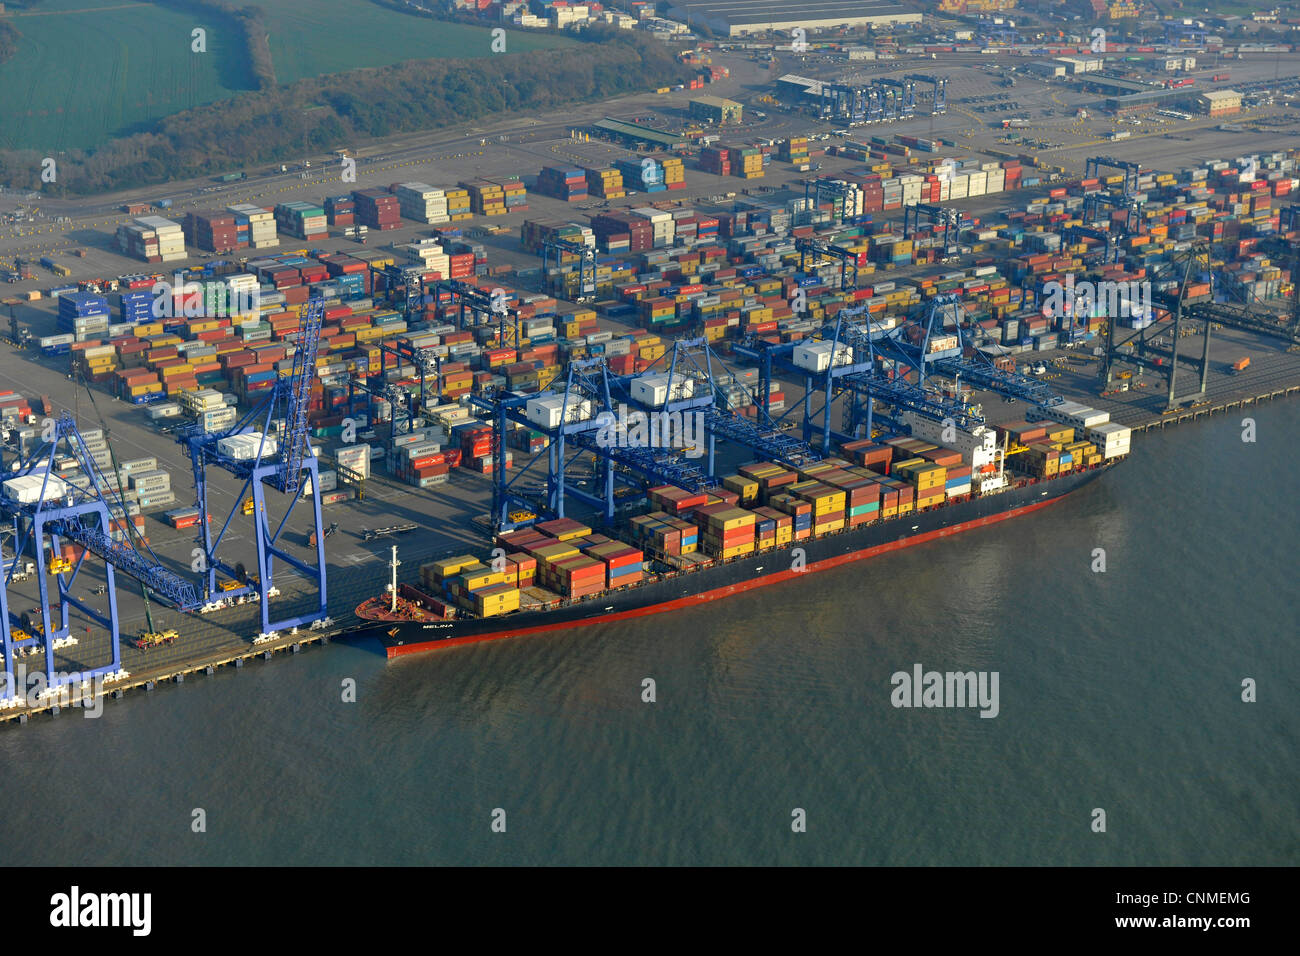 Luftaufnahme zeigt Felixstowe docks mit Schiff im Hafen, Containern und Kränen. Stockfoto